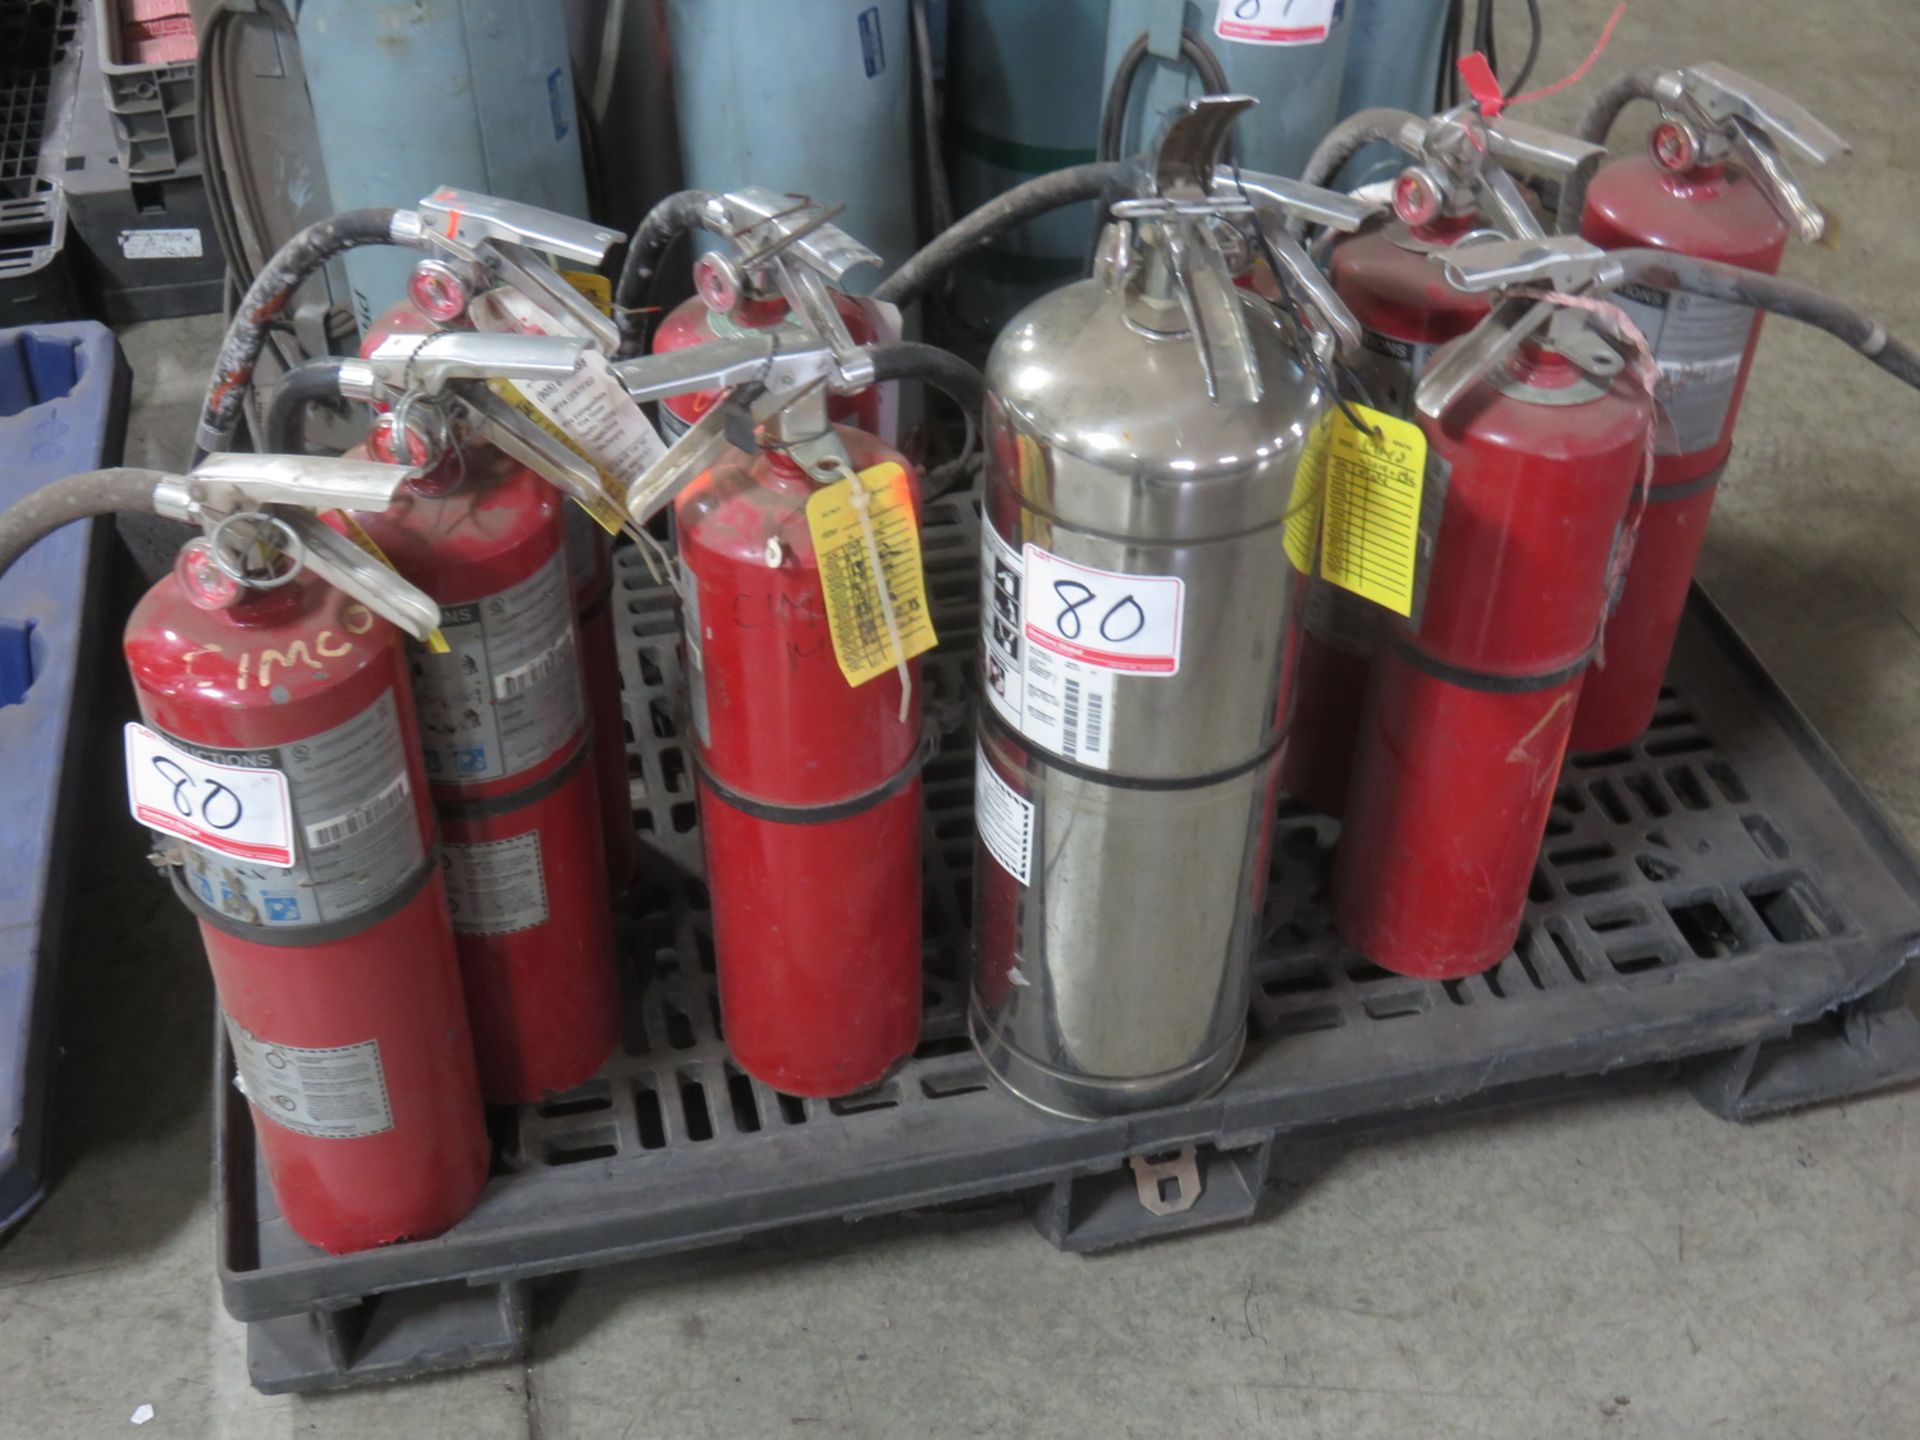 LOT - DRY CHEMICAL & LIQUID FIRE EXTINGUISHERS (10 PCS)